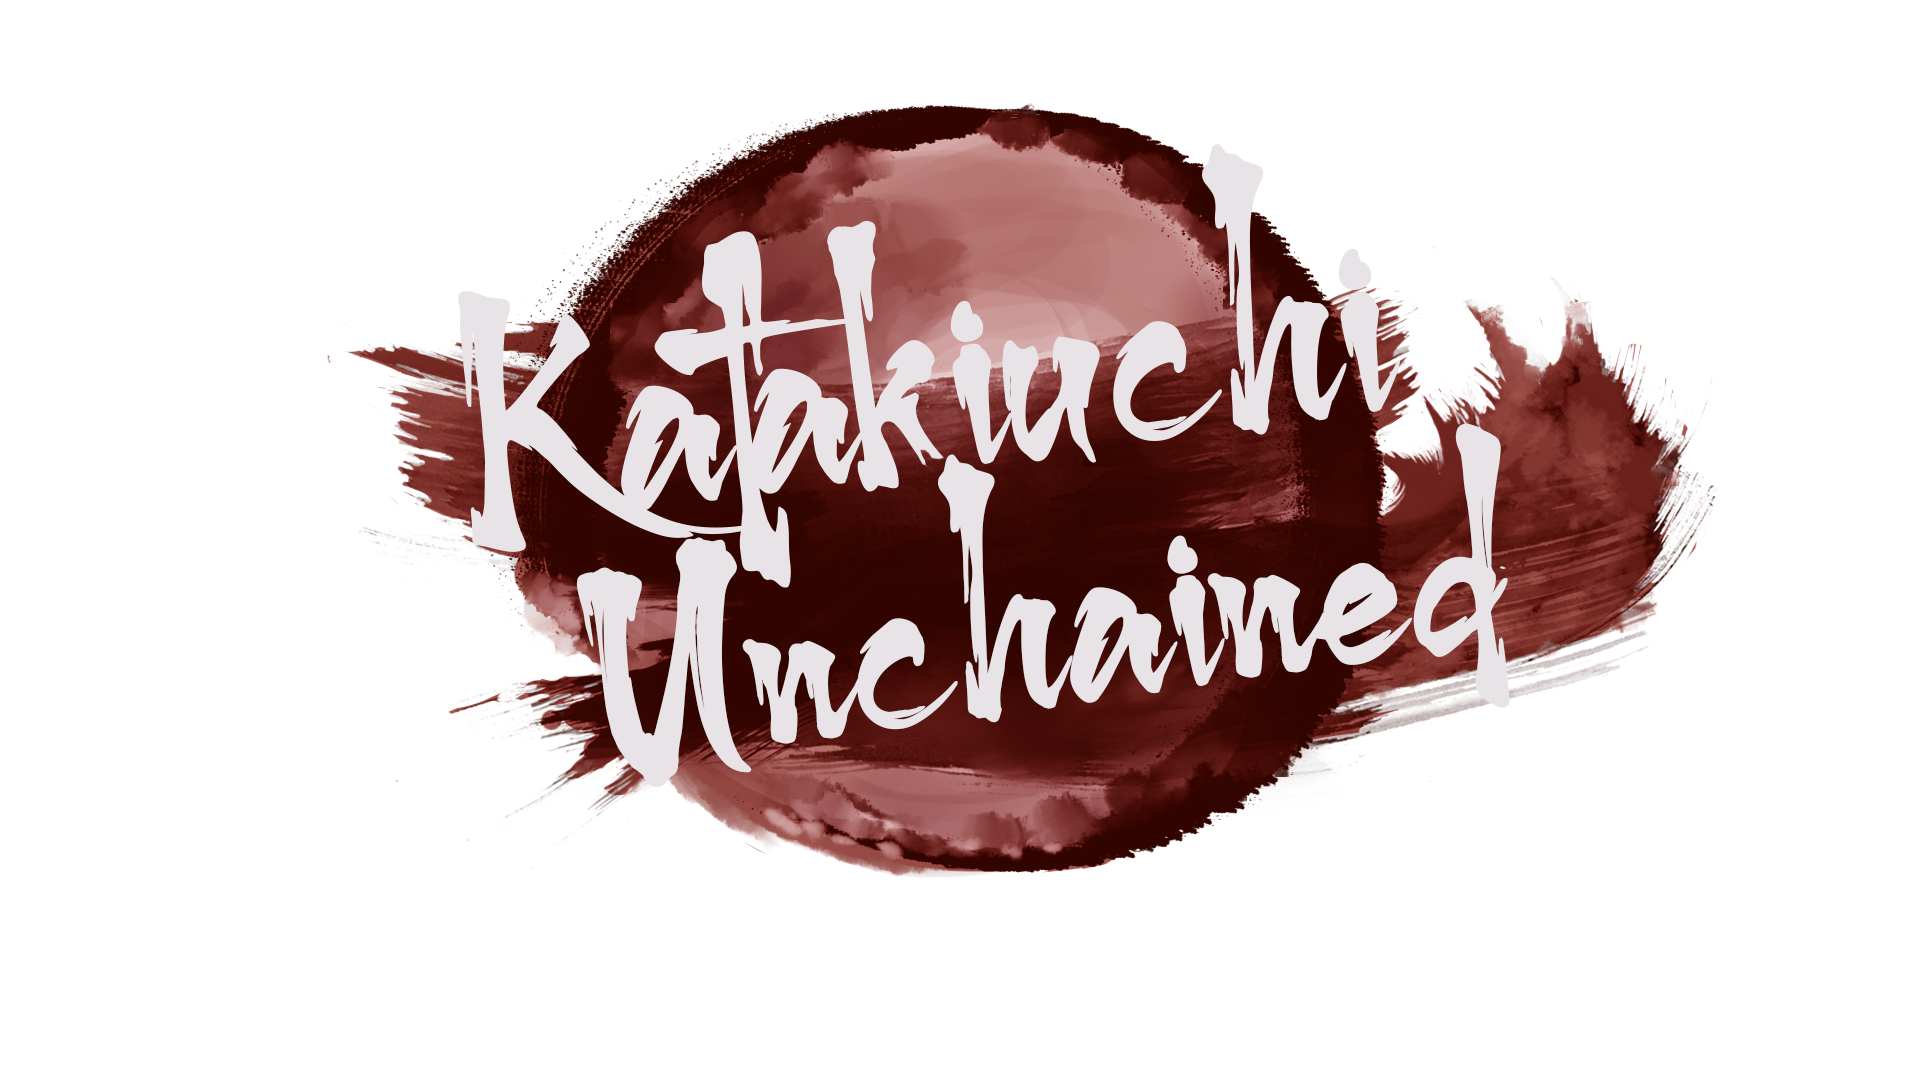 Katakiuchi Unchained